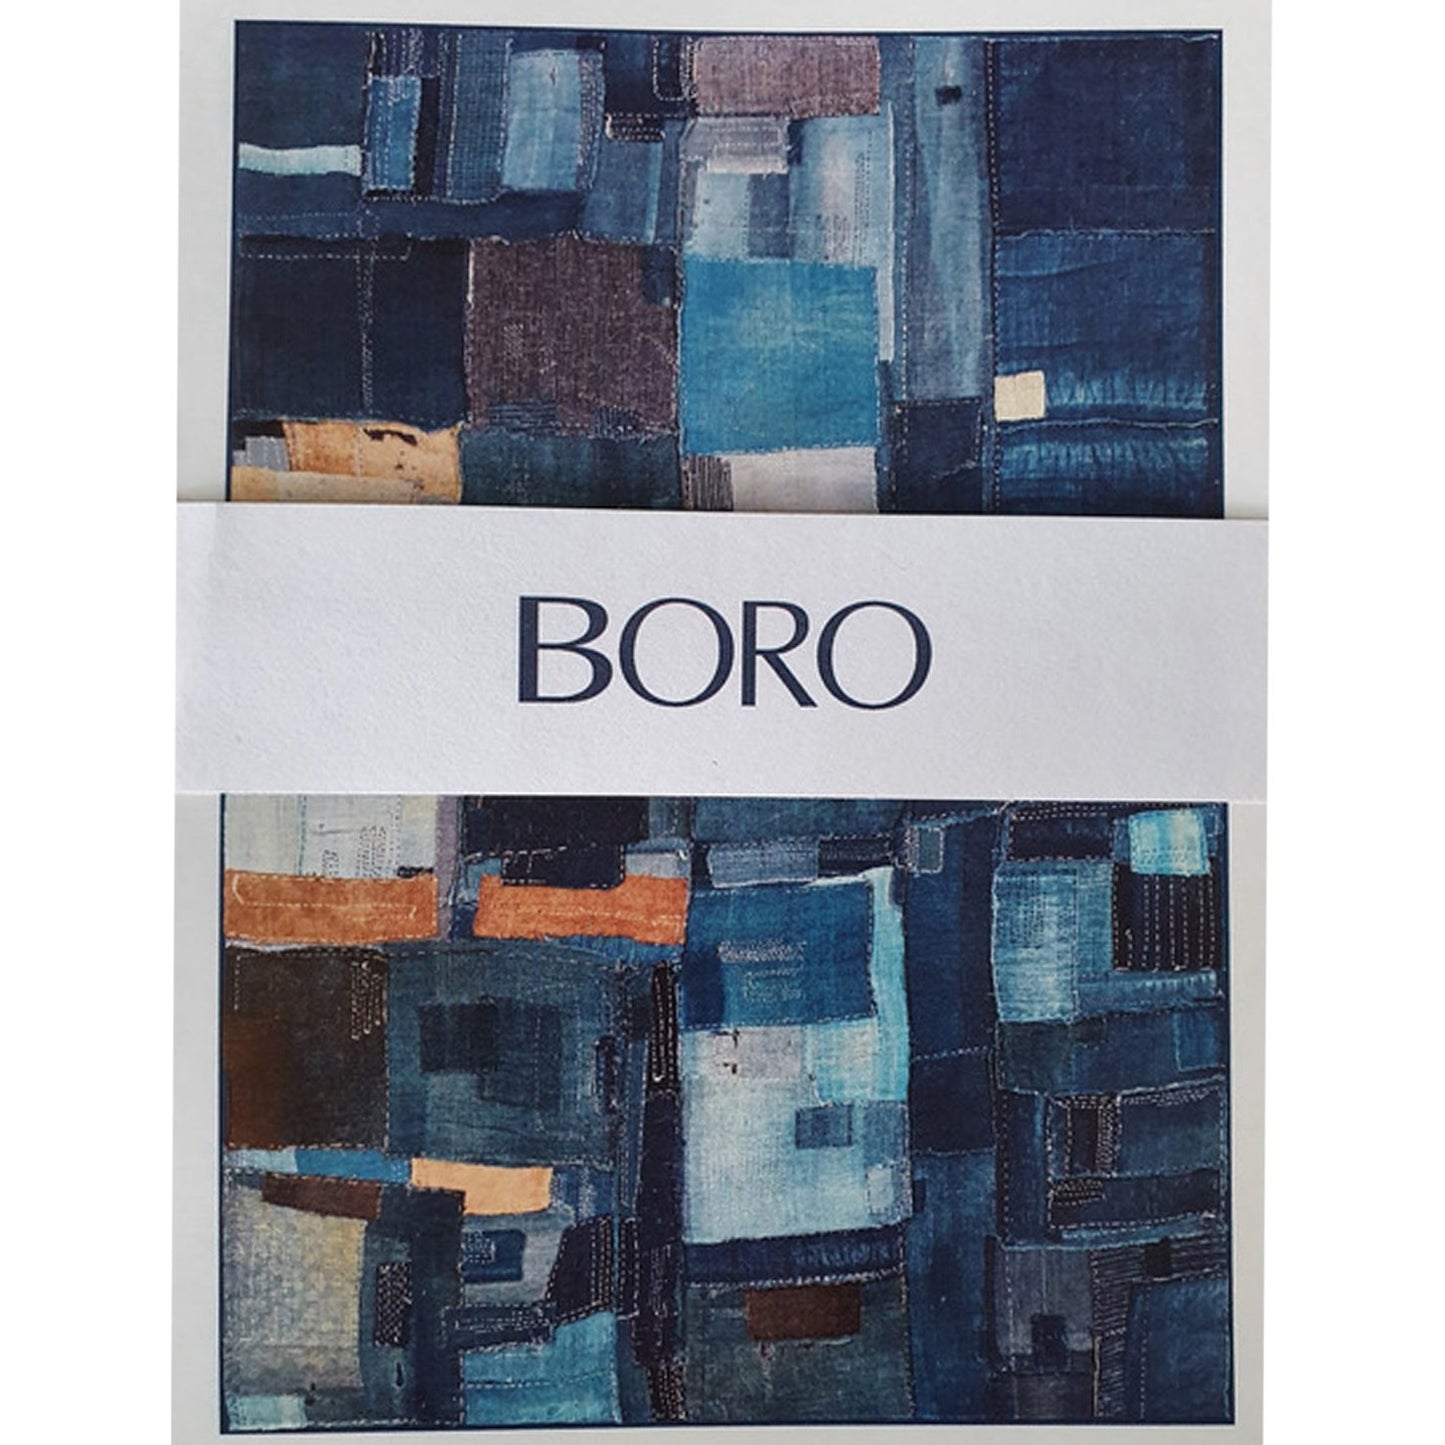 Boro Postcards: Gordon Reece's Collection